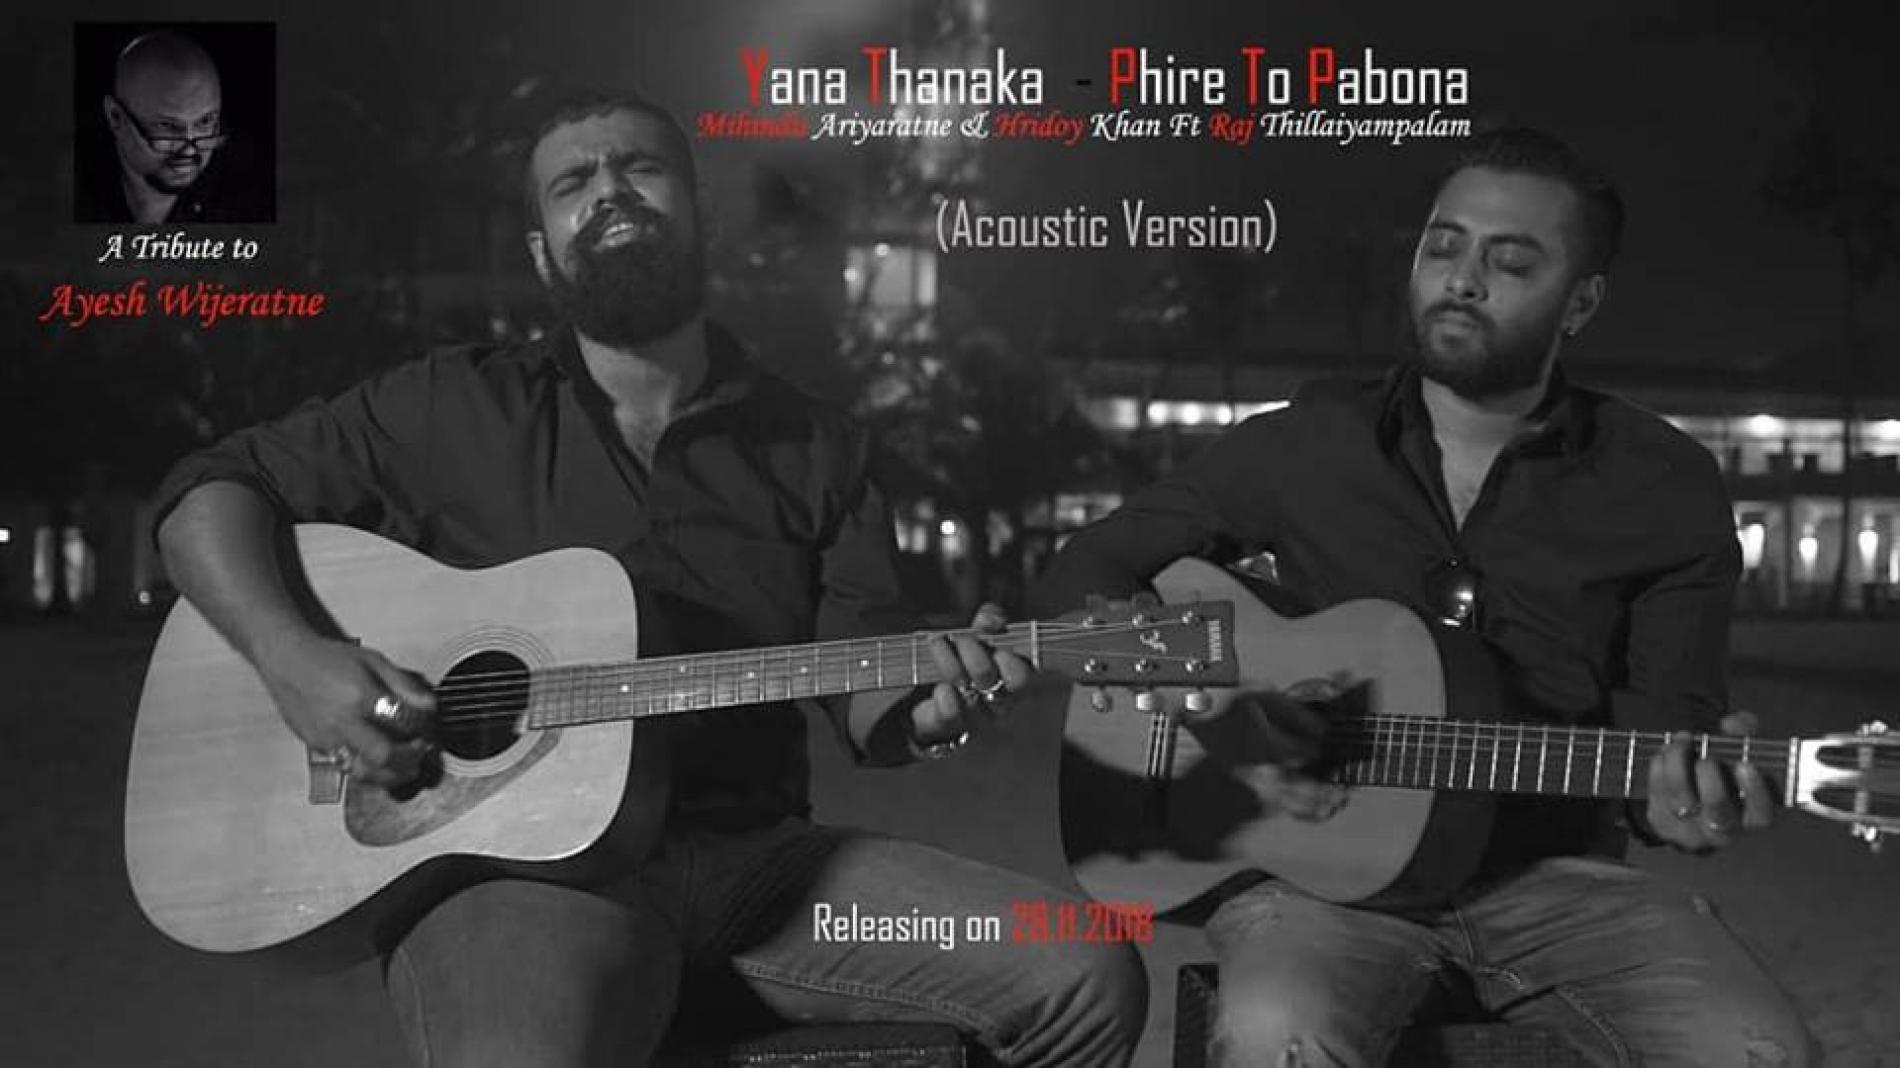 Mihindu Ariyaratne Feat Raj Thillaiyampalam – Yana Thanaka (Acoustic Version / Trailer)